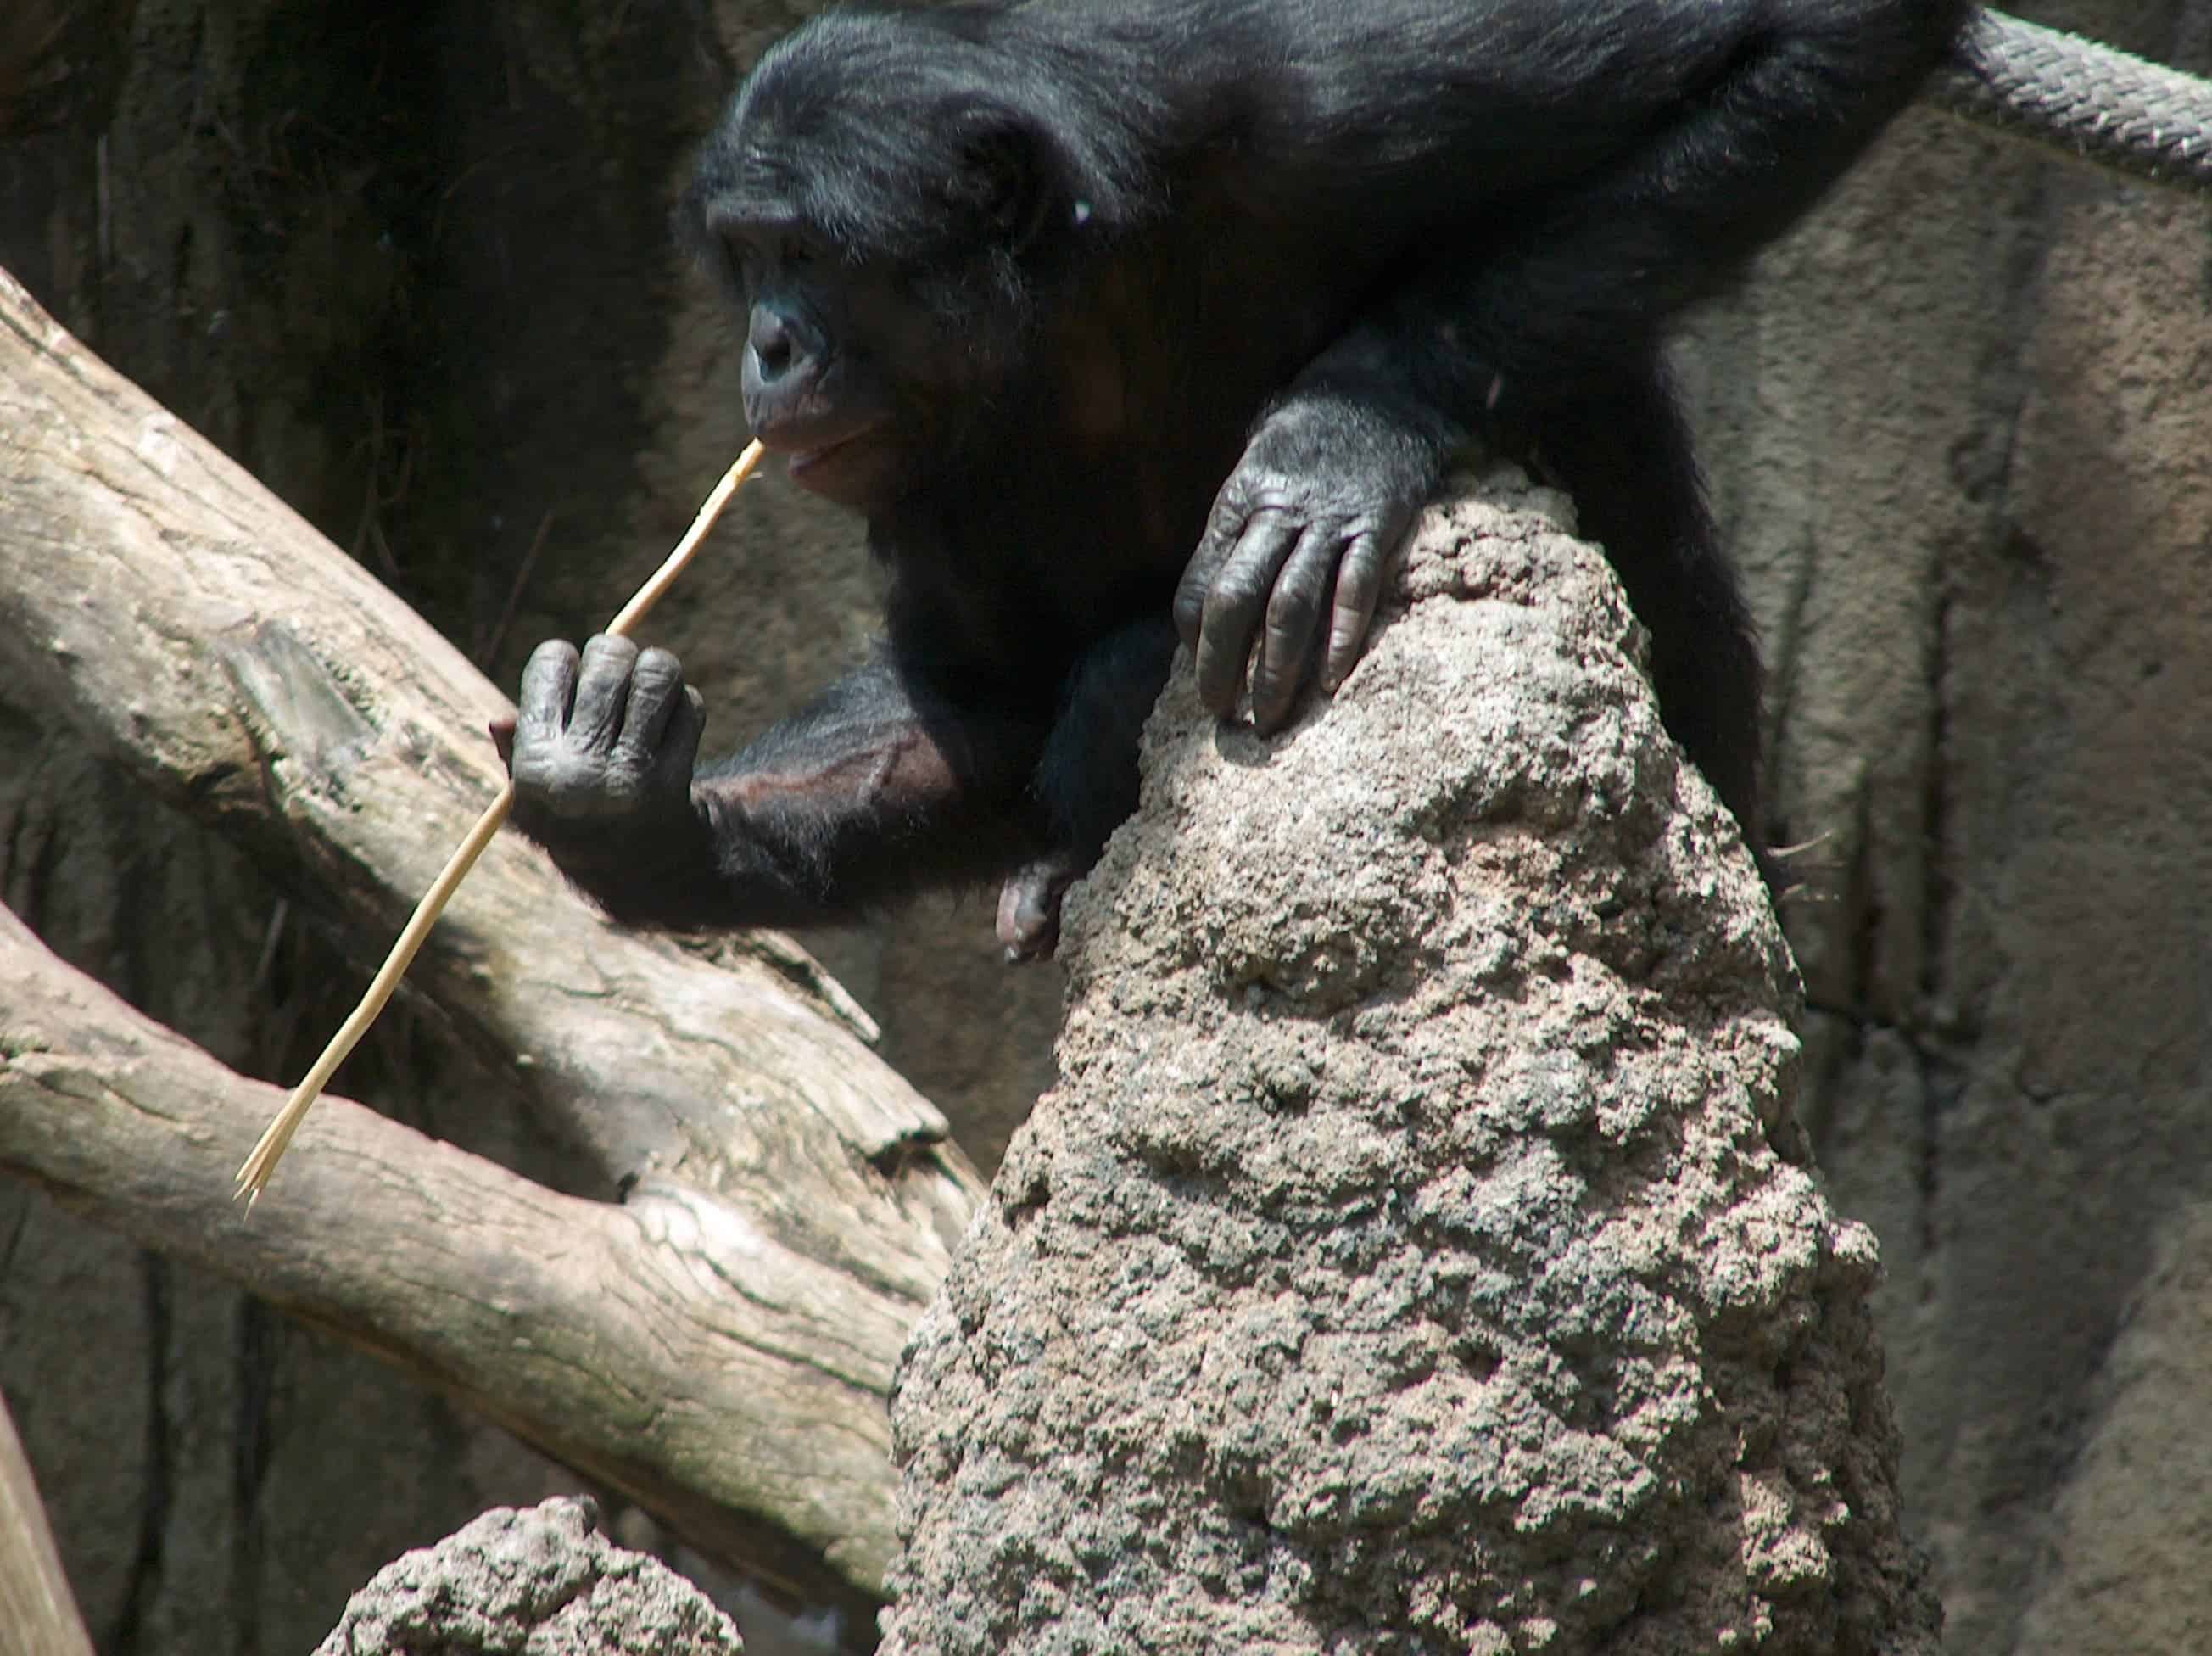 A bonobo 